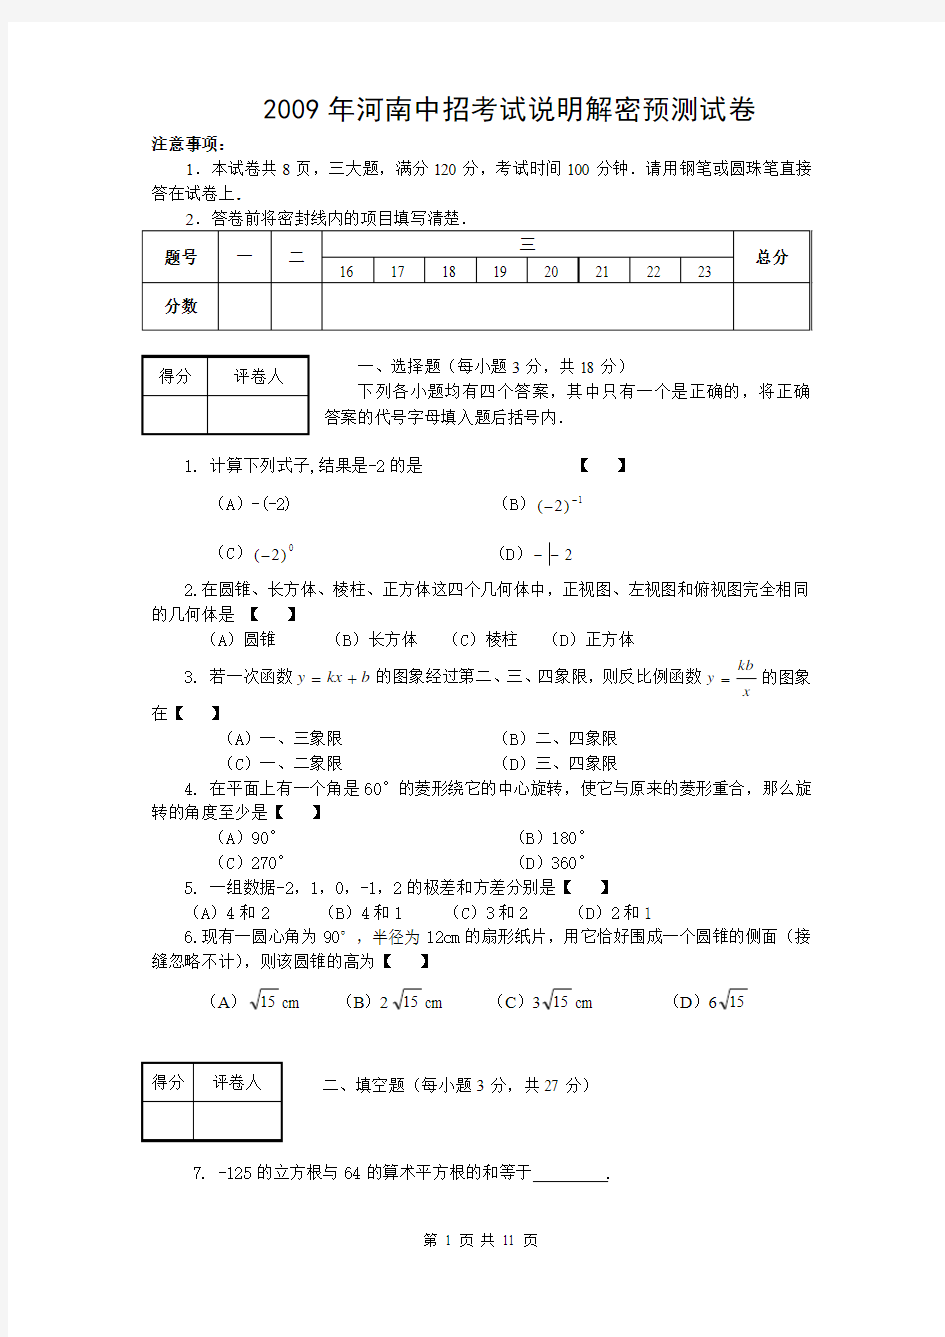 【精品试卷】2009年河南省中招考试说明解密预测数学试卷(2) 含参考答案及评分标准